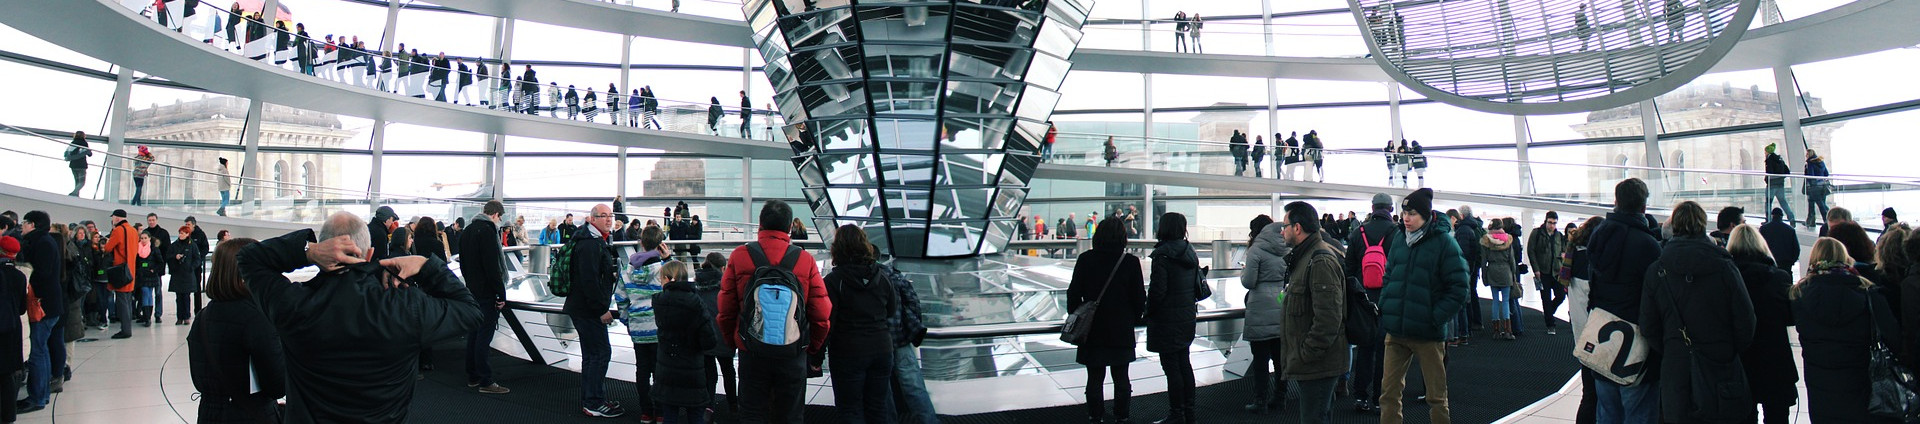 Kuppel des Deutschen Bundestages von innen mit mehreren Menschen im Vordergrund